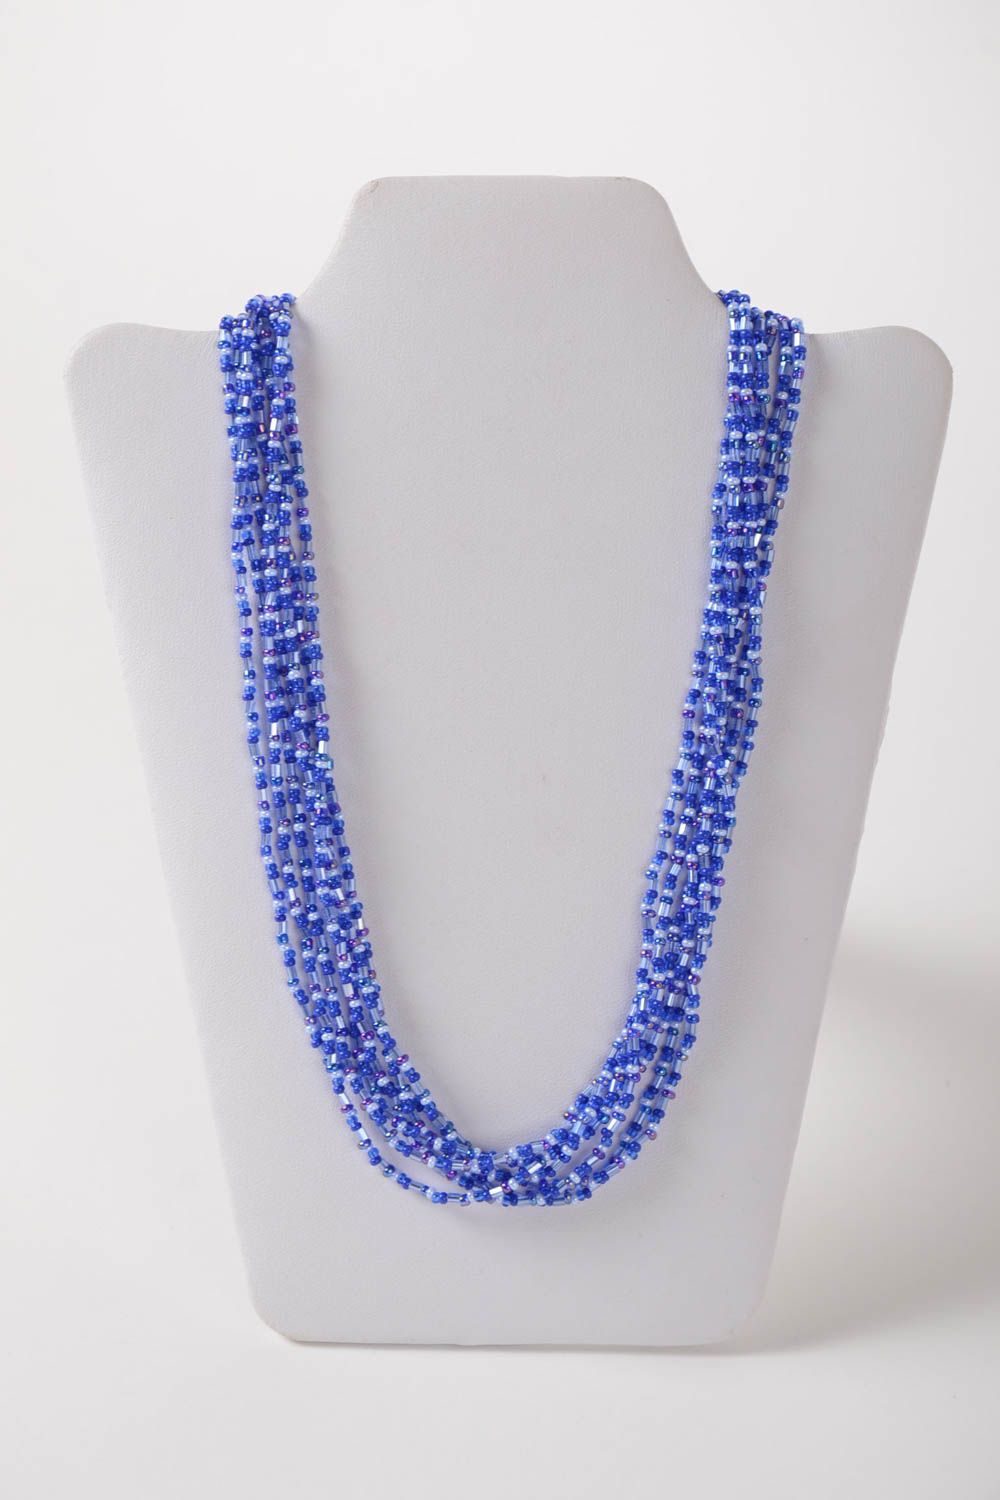 Ожерелье из бисера длинное голубое красивое на шею женское ручная работа фото 2